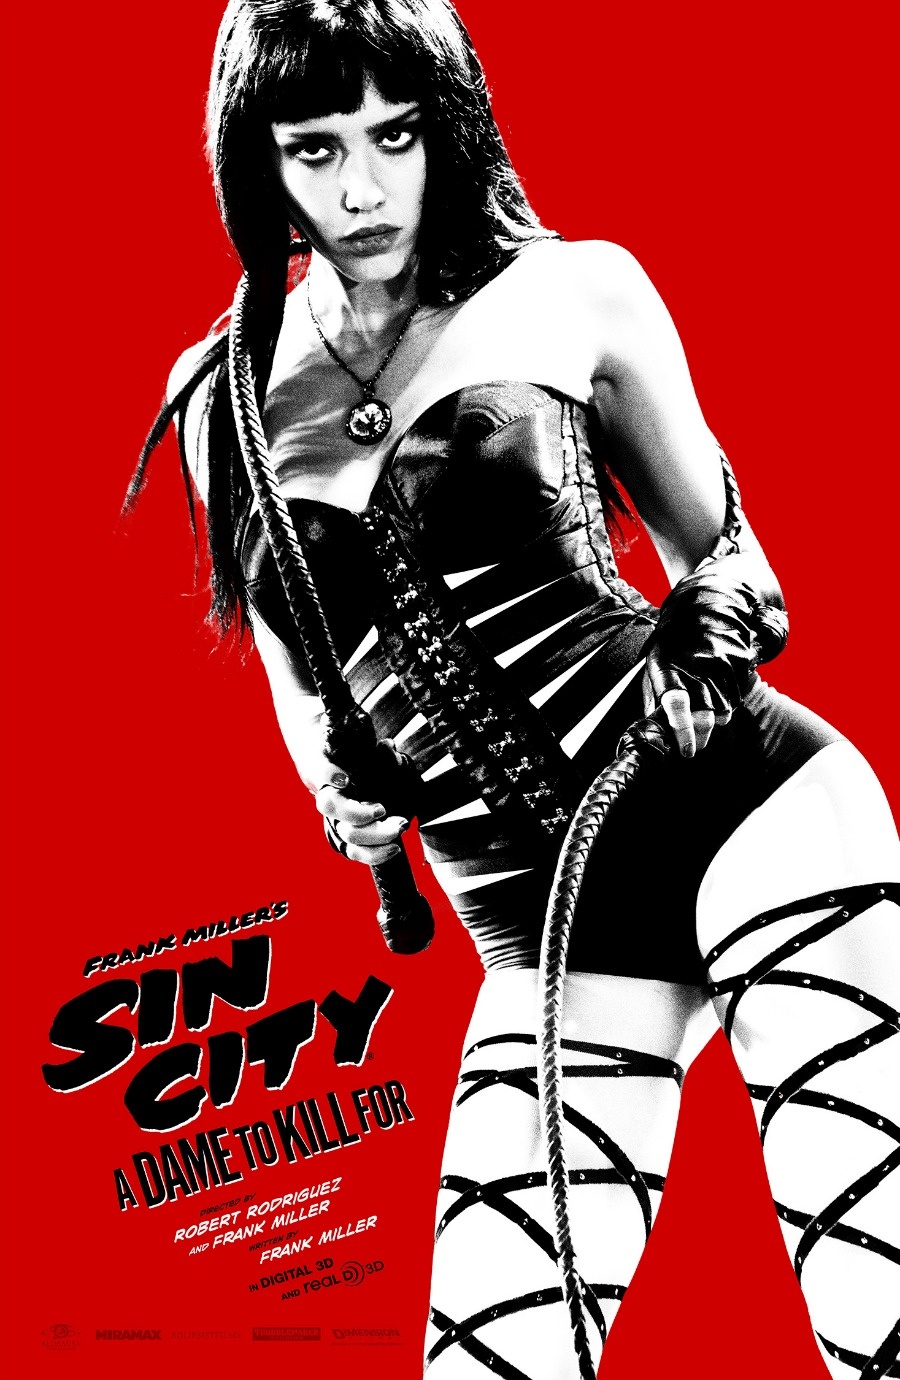 ｃｉａ こちら映画中央情報局です Sin City 2 シン シティ2 ア デイム トゥ キル フォー のとびきりにセクシーなジェシカ アルバと ミッキー ロークが登場したコミコン限定版ポスターと Tvスポットcmの第1弾